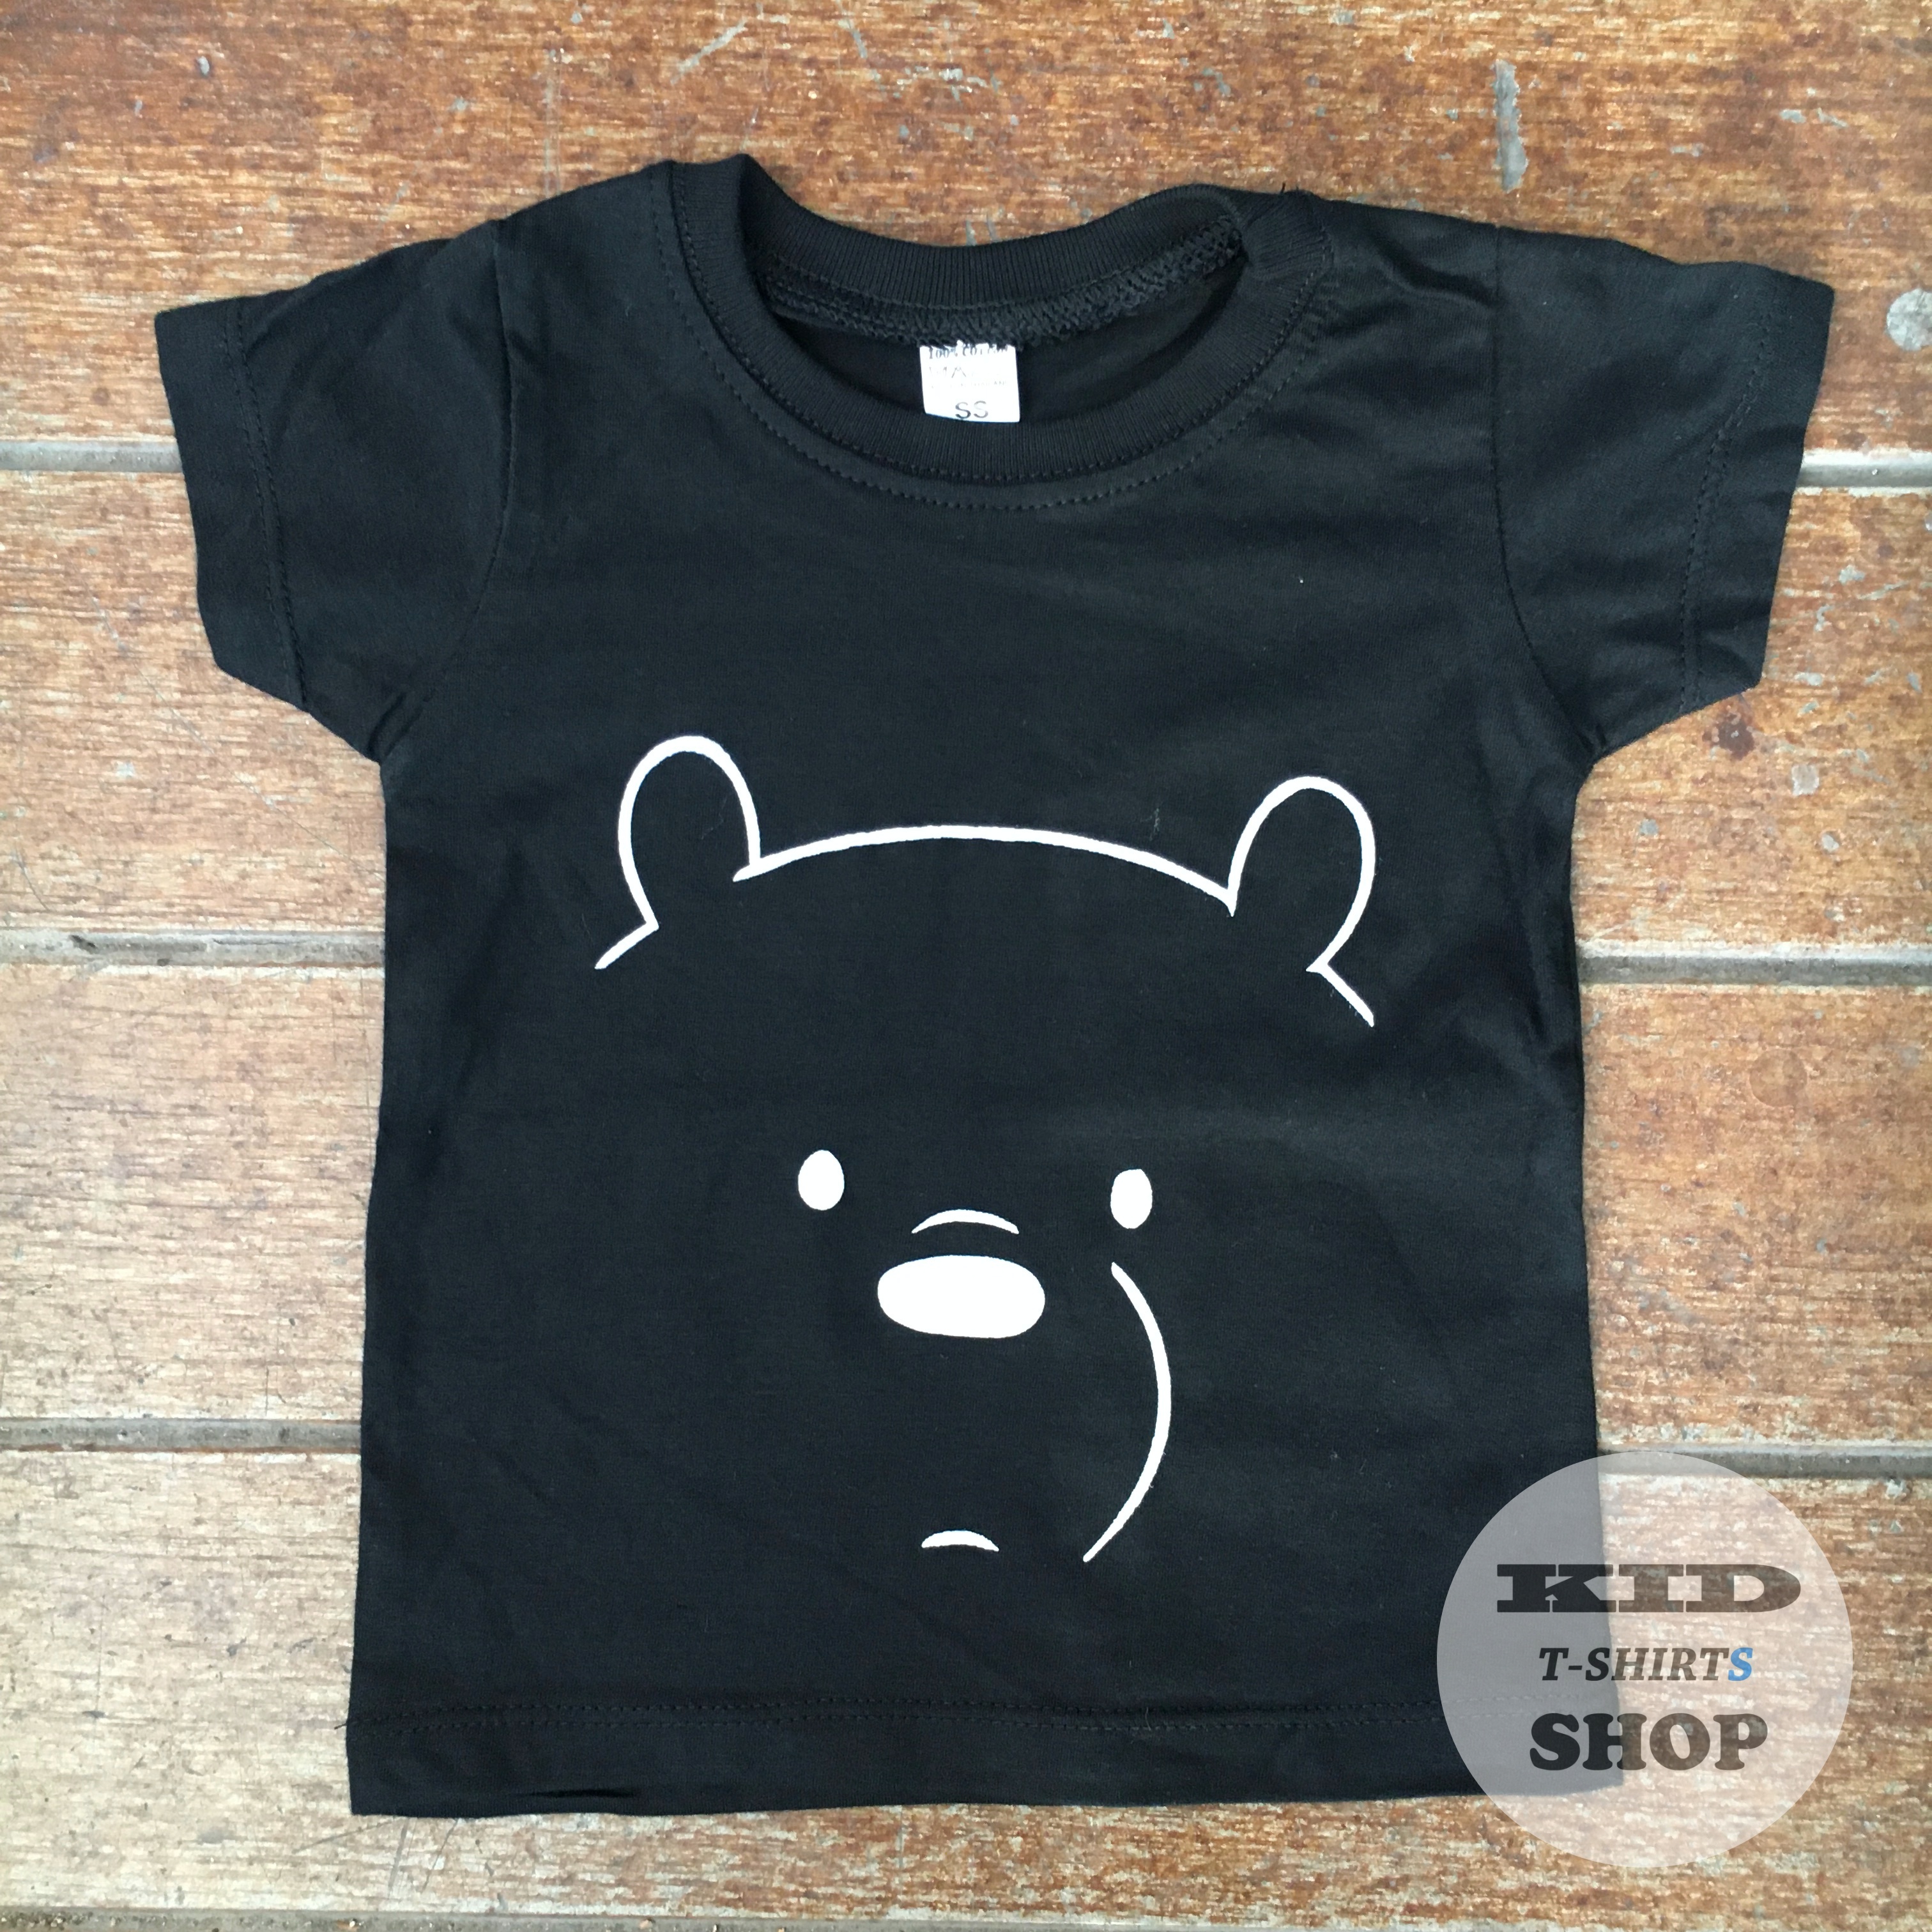 BabyOutlet เสื้อยืดเด็ก ลาย หมี We Bare Bears สีดำ แขนสั้น มี 4 ไซส์ (SS , S , M , L) เสื้อเด็ก มี Size แรกเกิด - 6 ปี ผลิตจากผ้าฝ้าย 100% ชุดเด็ก